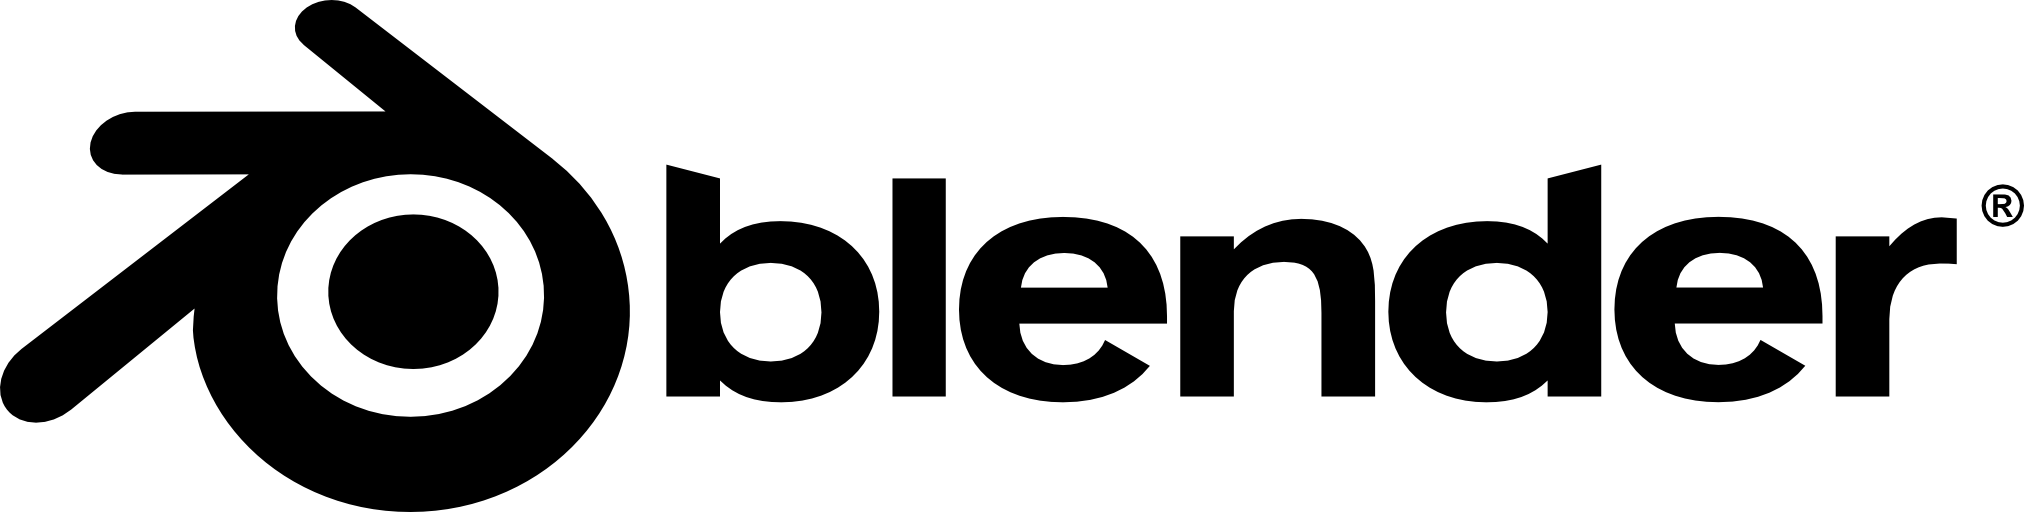 Logo du logiciel libre Blender